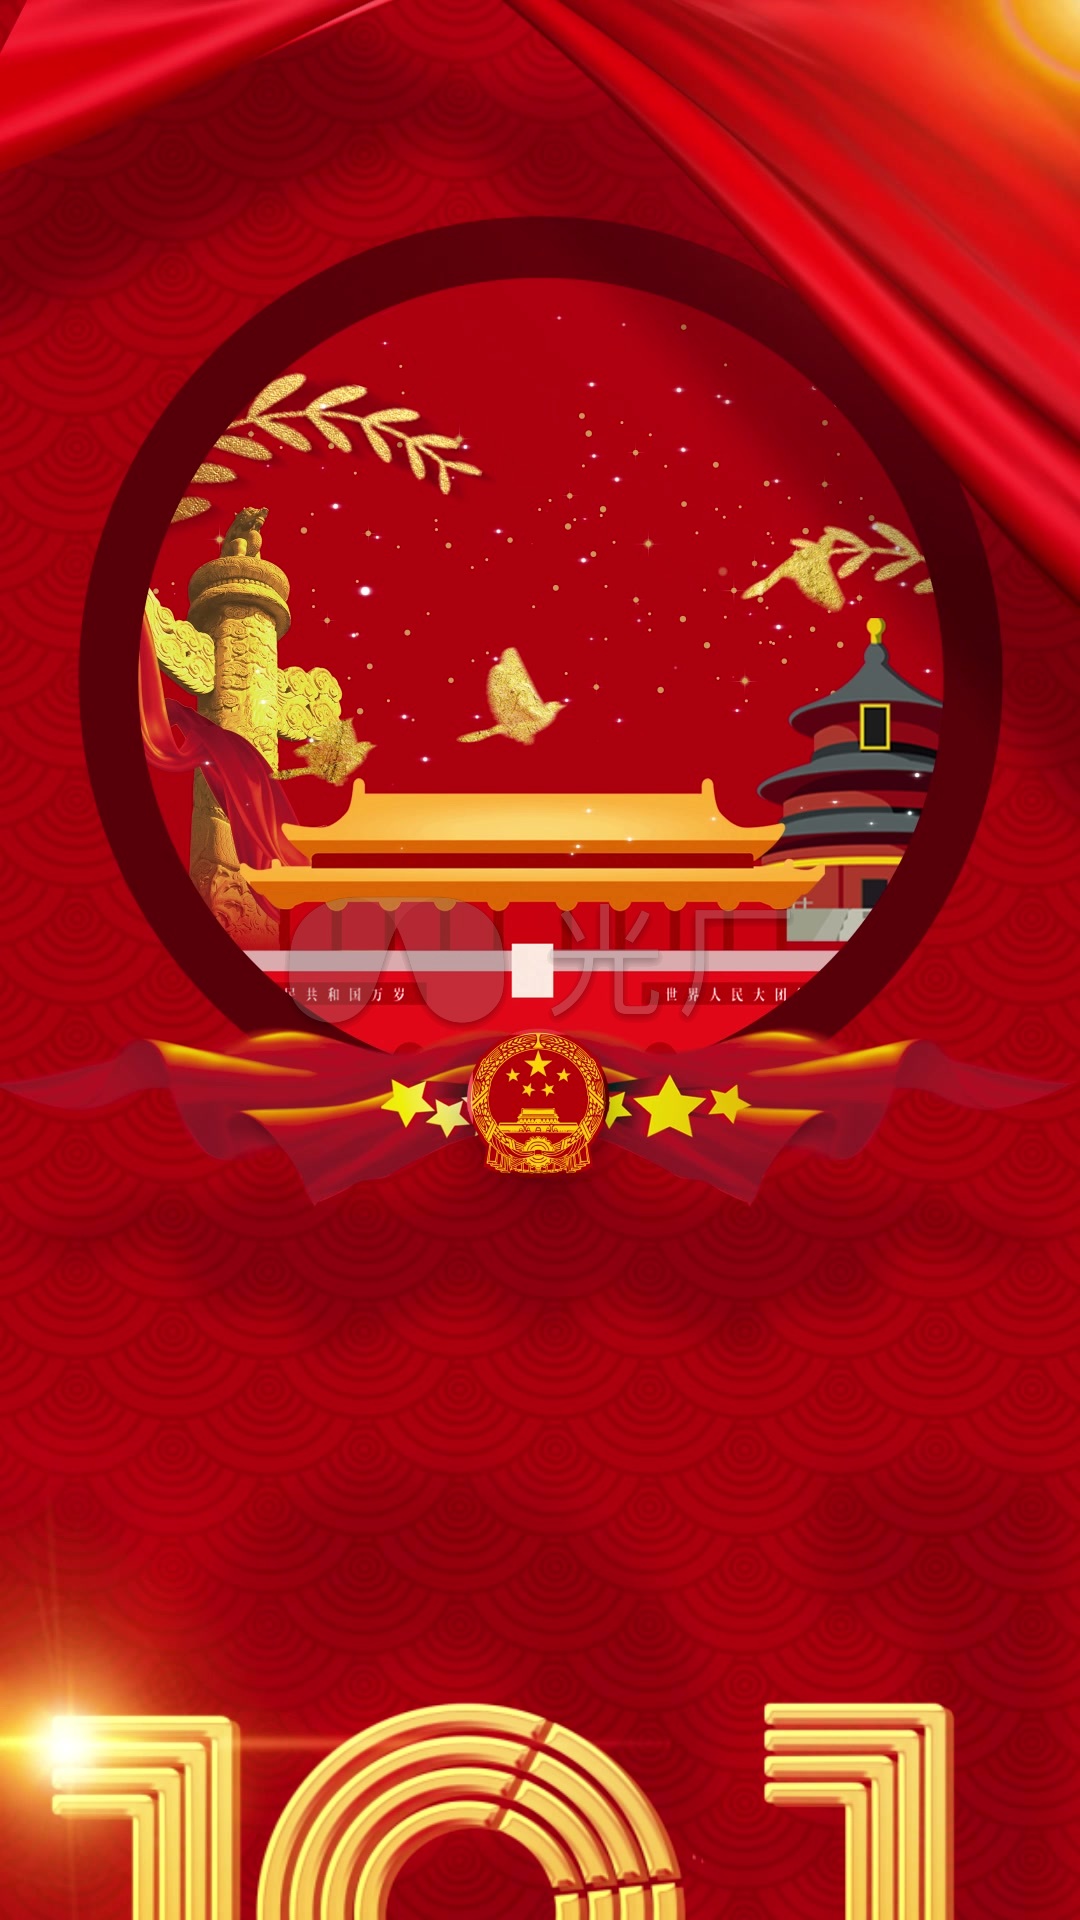 【竖屏】国庆节69周年动态海报朋友圈抖音_ae模板下载